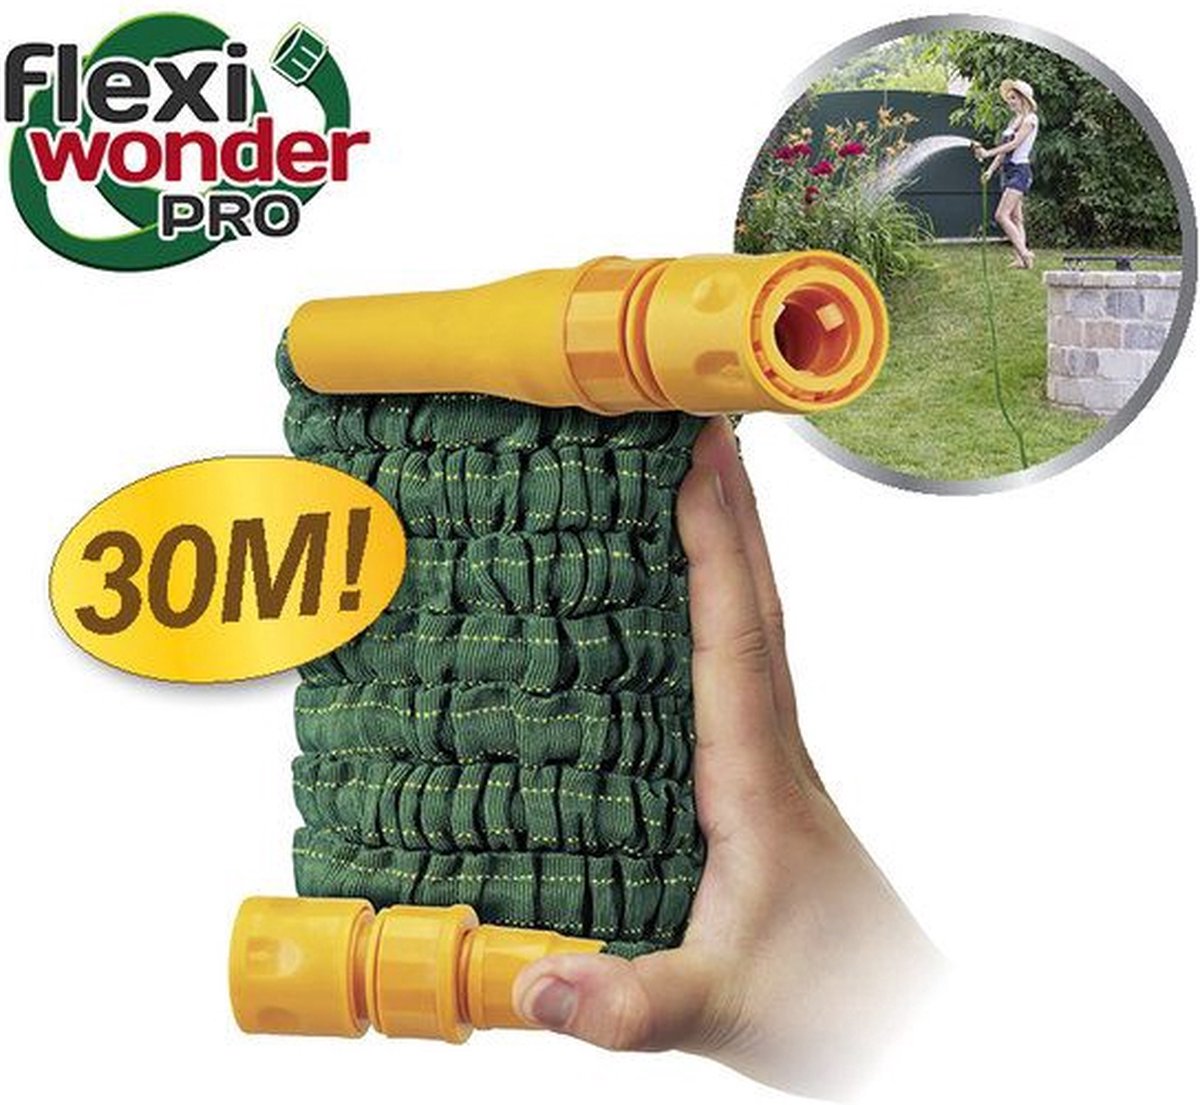 FlexiWonder Pro Pocket Hose 30 mtr Tuinslang Groeiende tuinslang - Growing Garden Hose